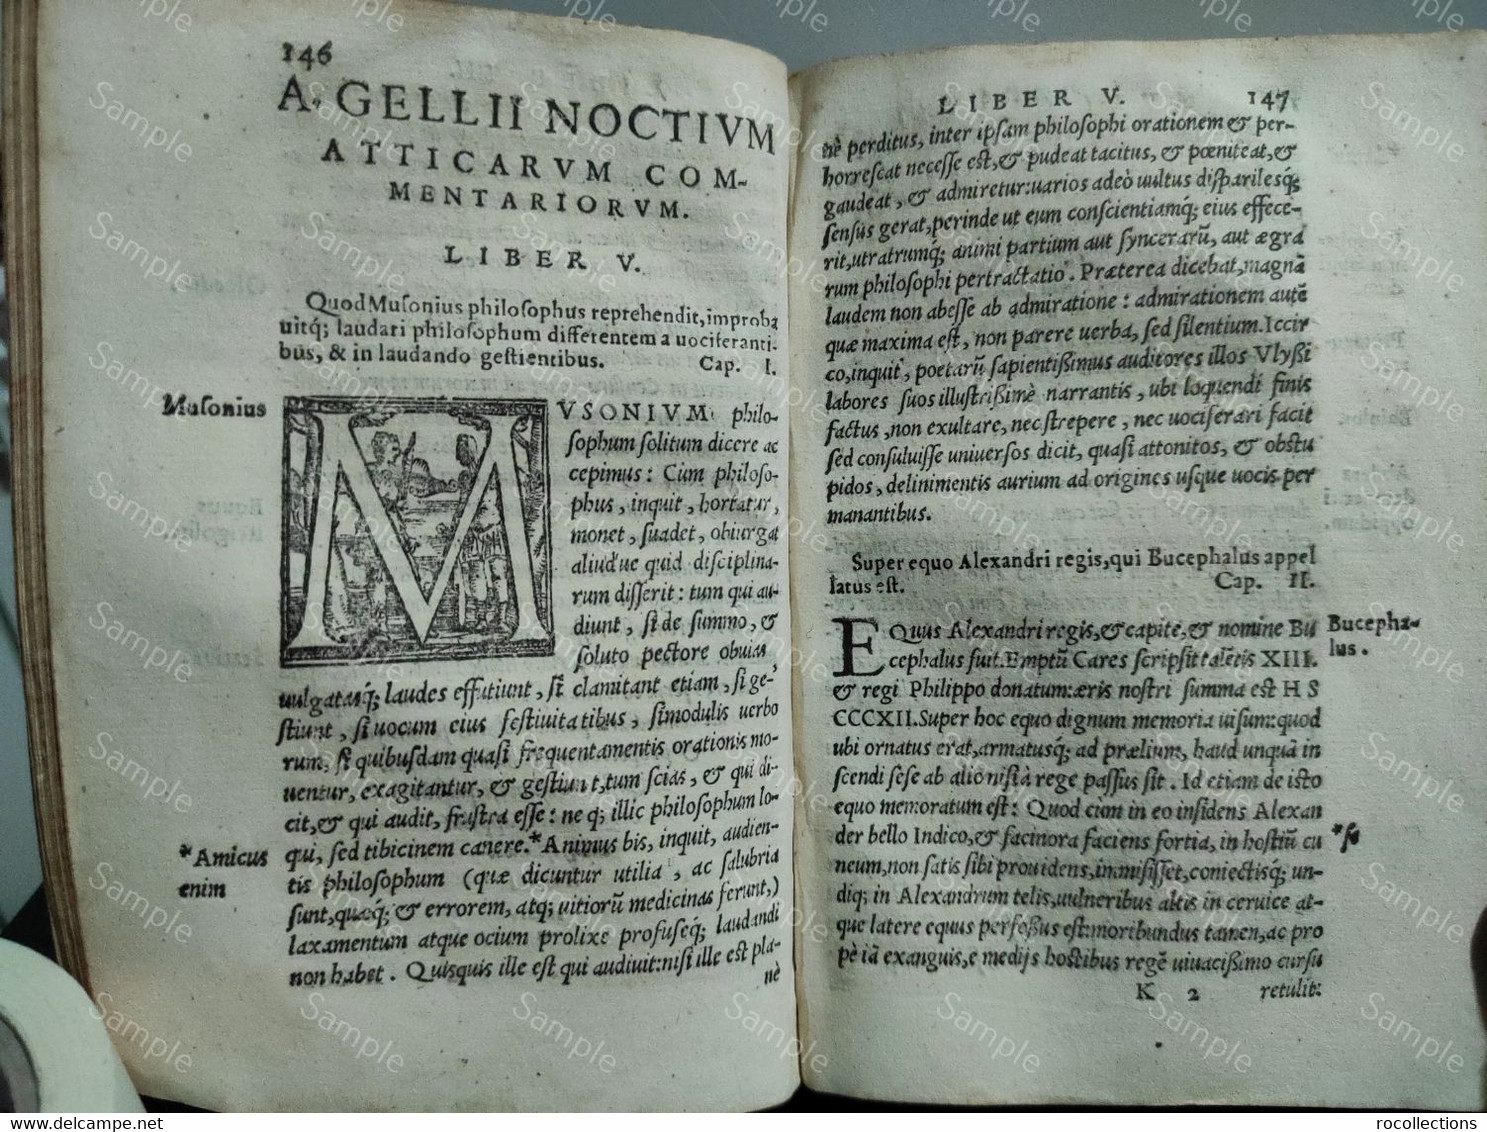 Italy Venice. AULI GELLII, Luculentissimi Scriptoris, Noctes Atticae Venetiis 1573 - Livres Anciens